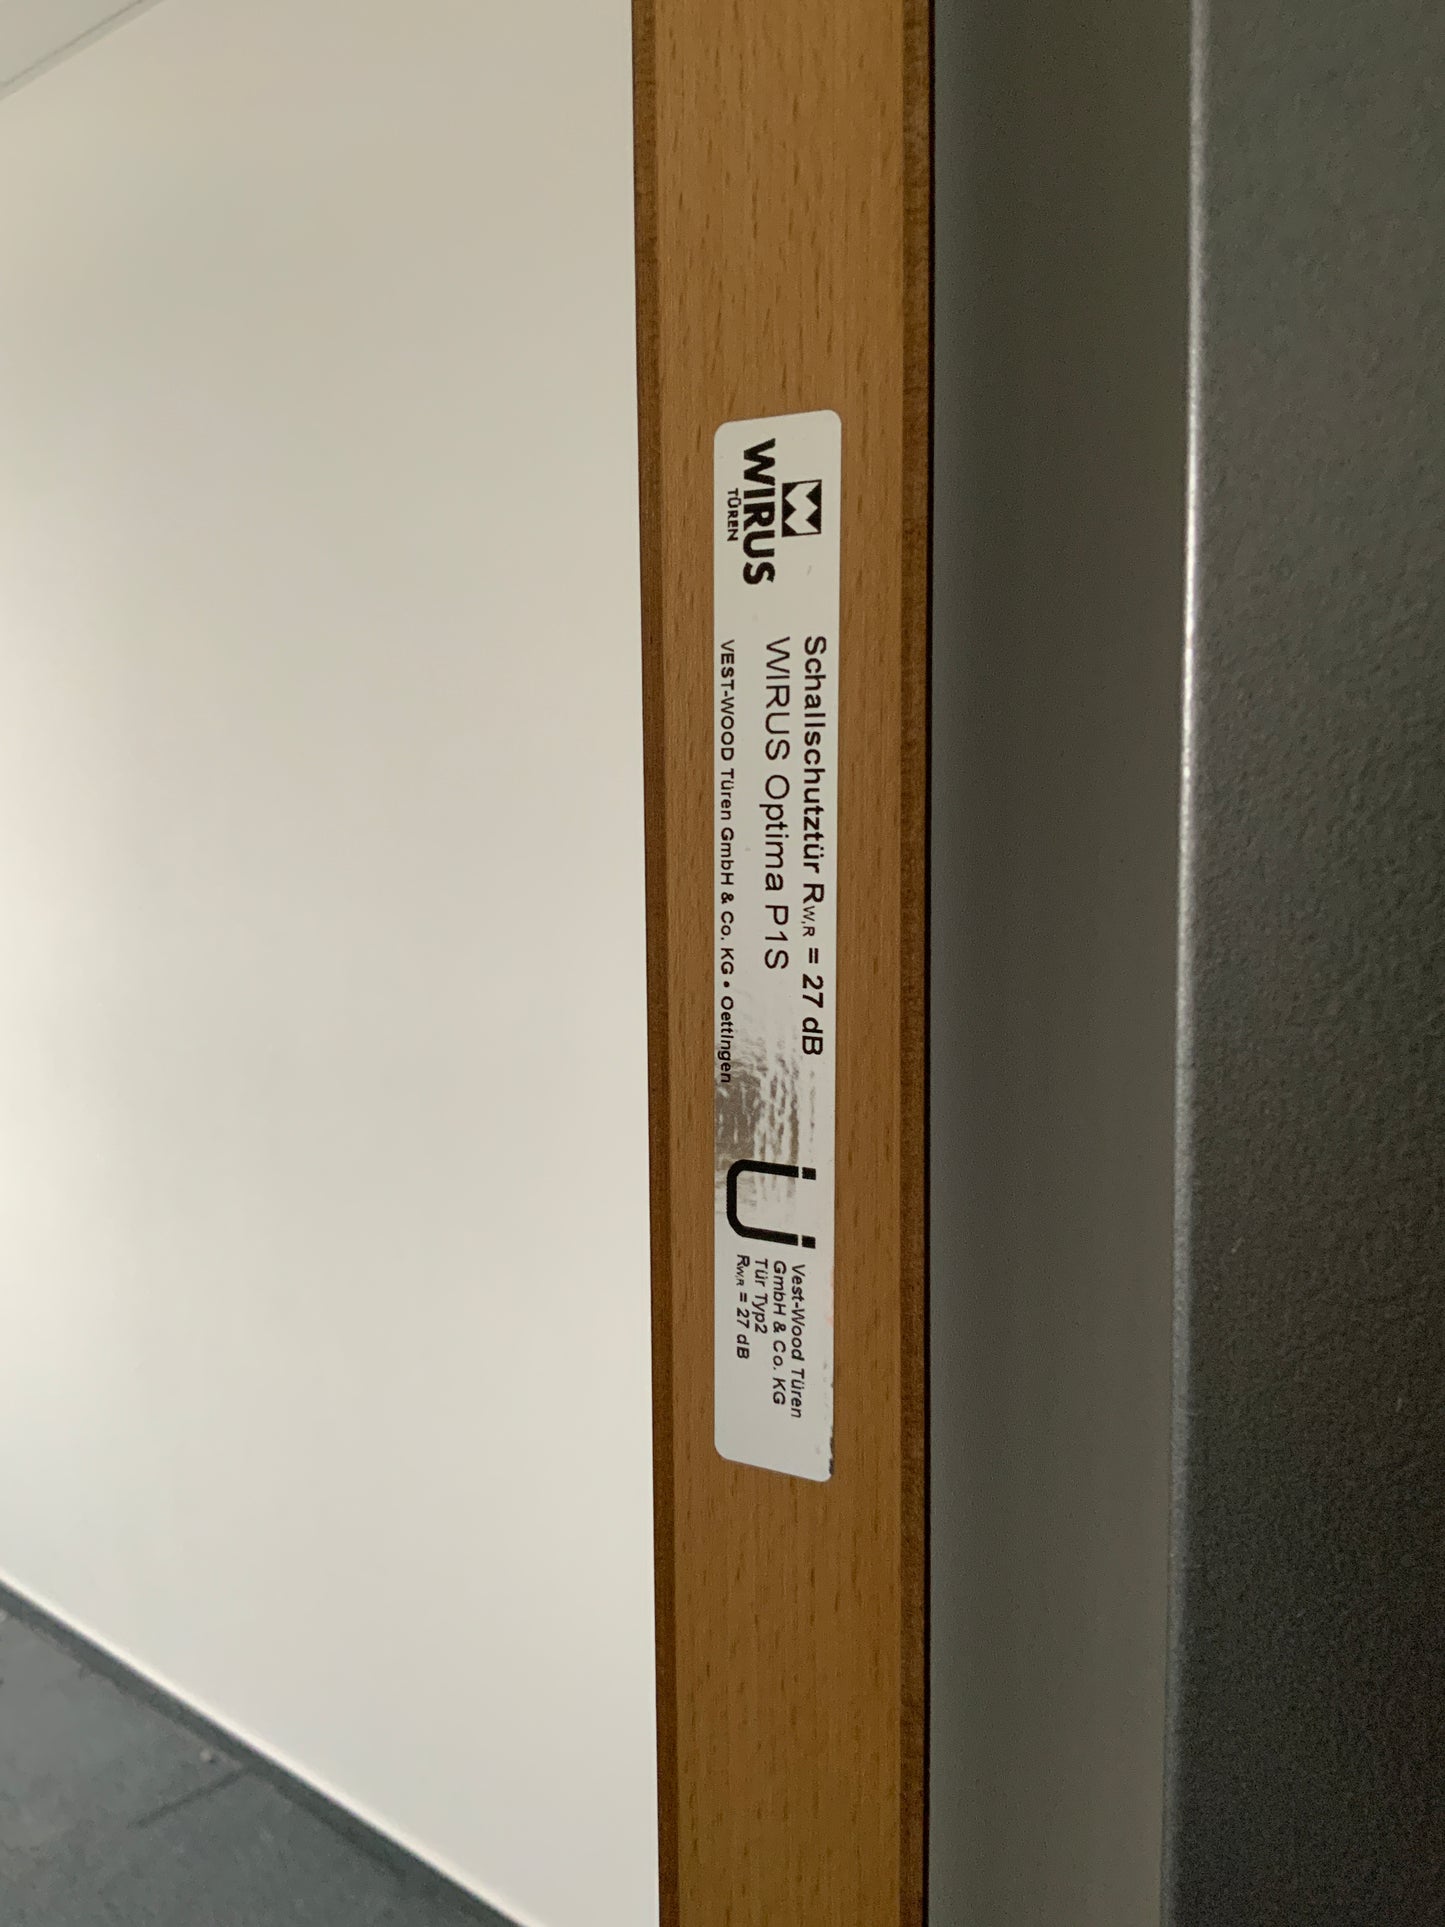 1-flüglige Schallschutztür Holz Wirus 1030x2140x180